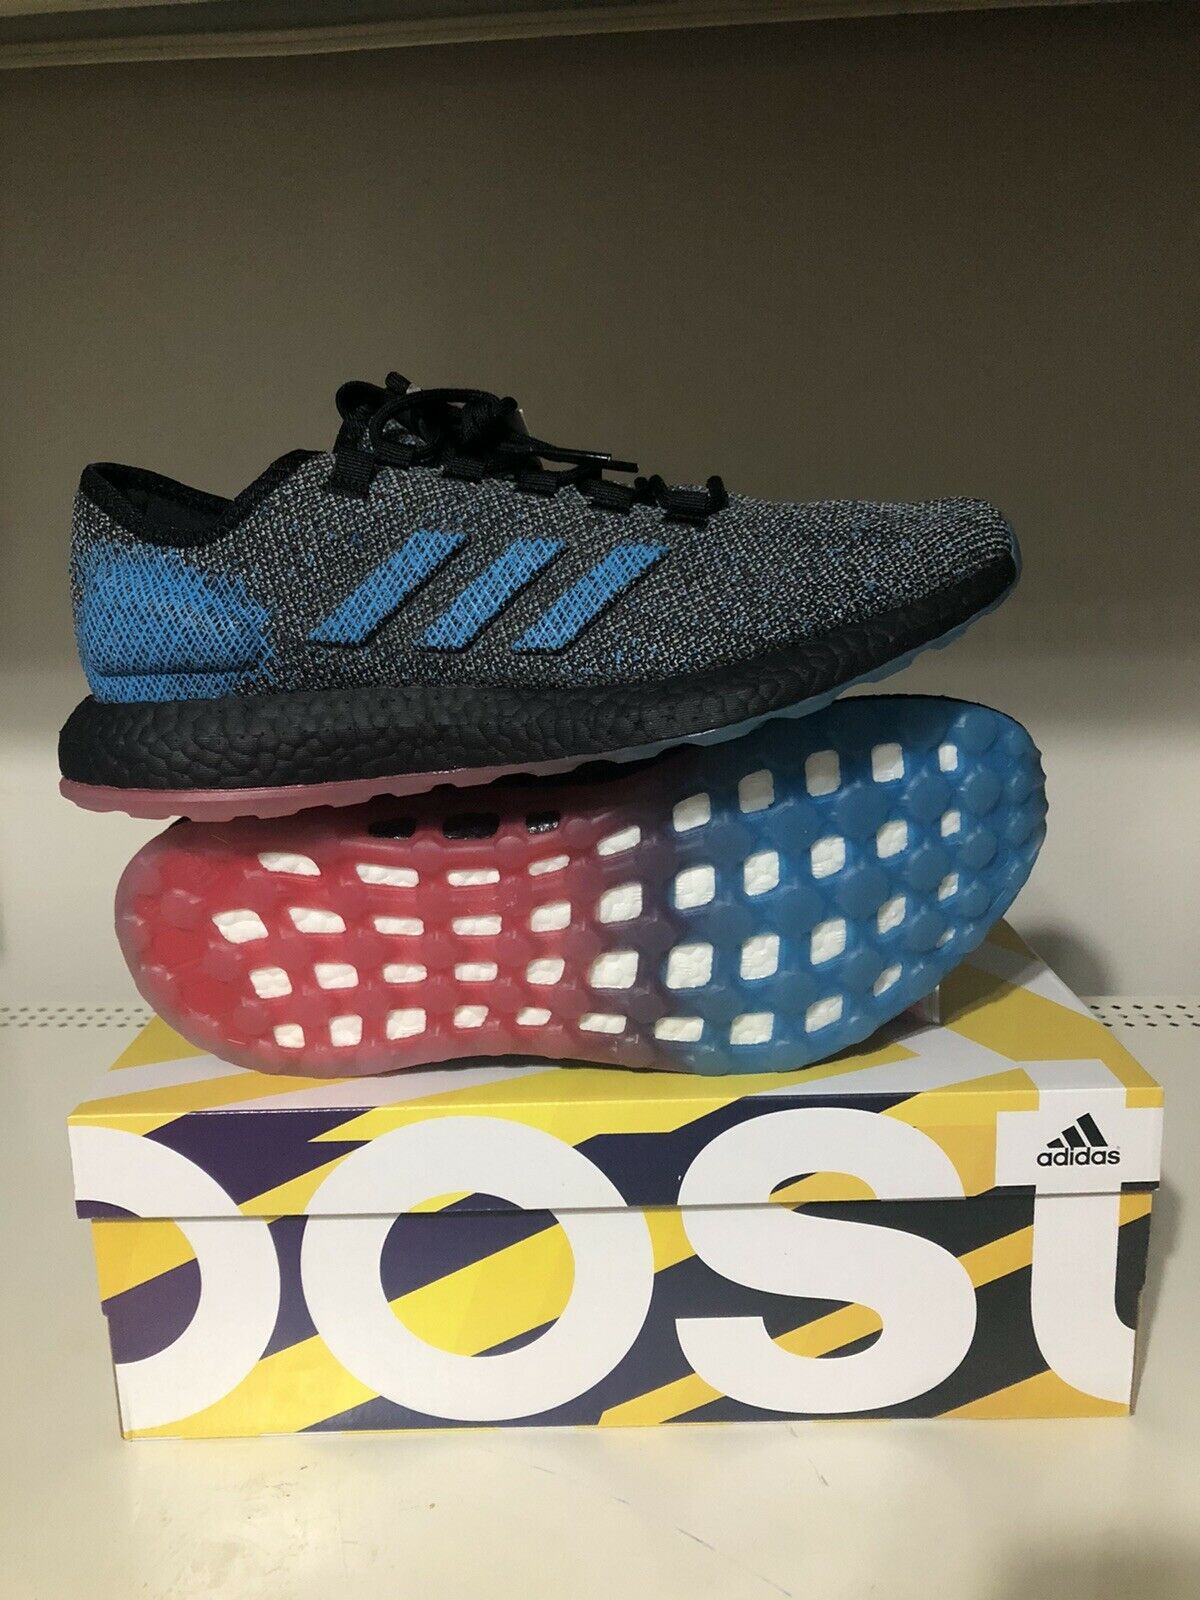 New Size 10.5 Adidas PureBOOST LTD Boost Running Shoes Men’s Blue Black B37811